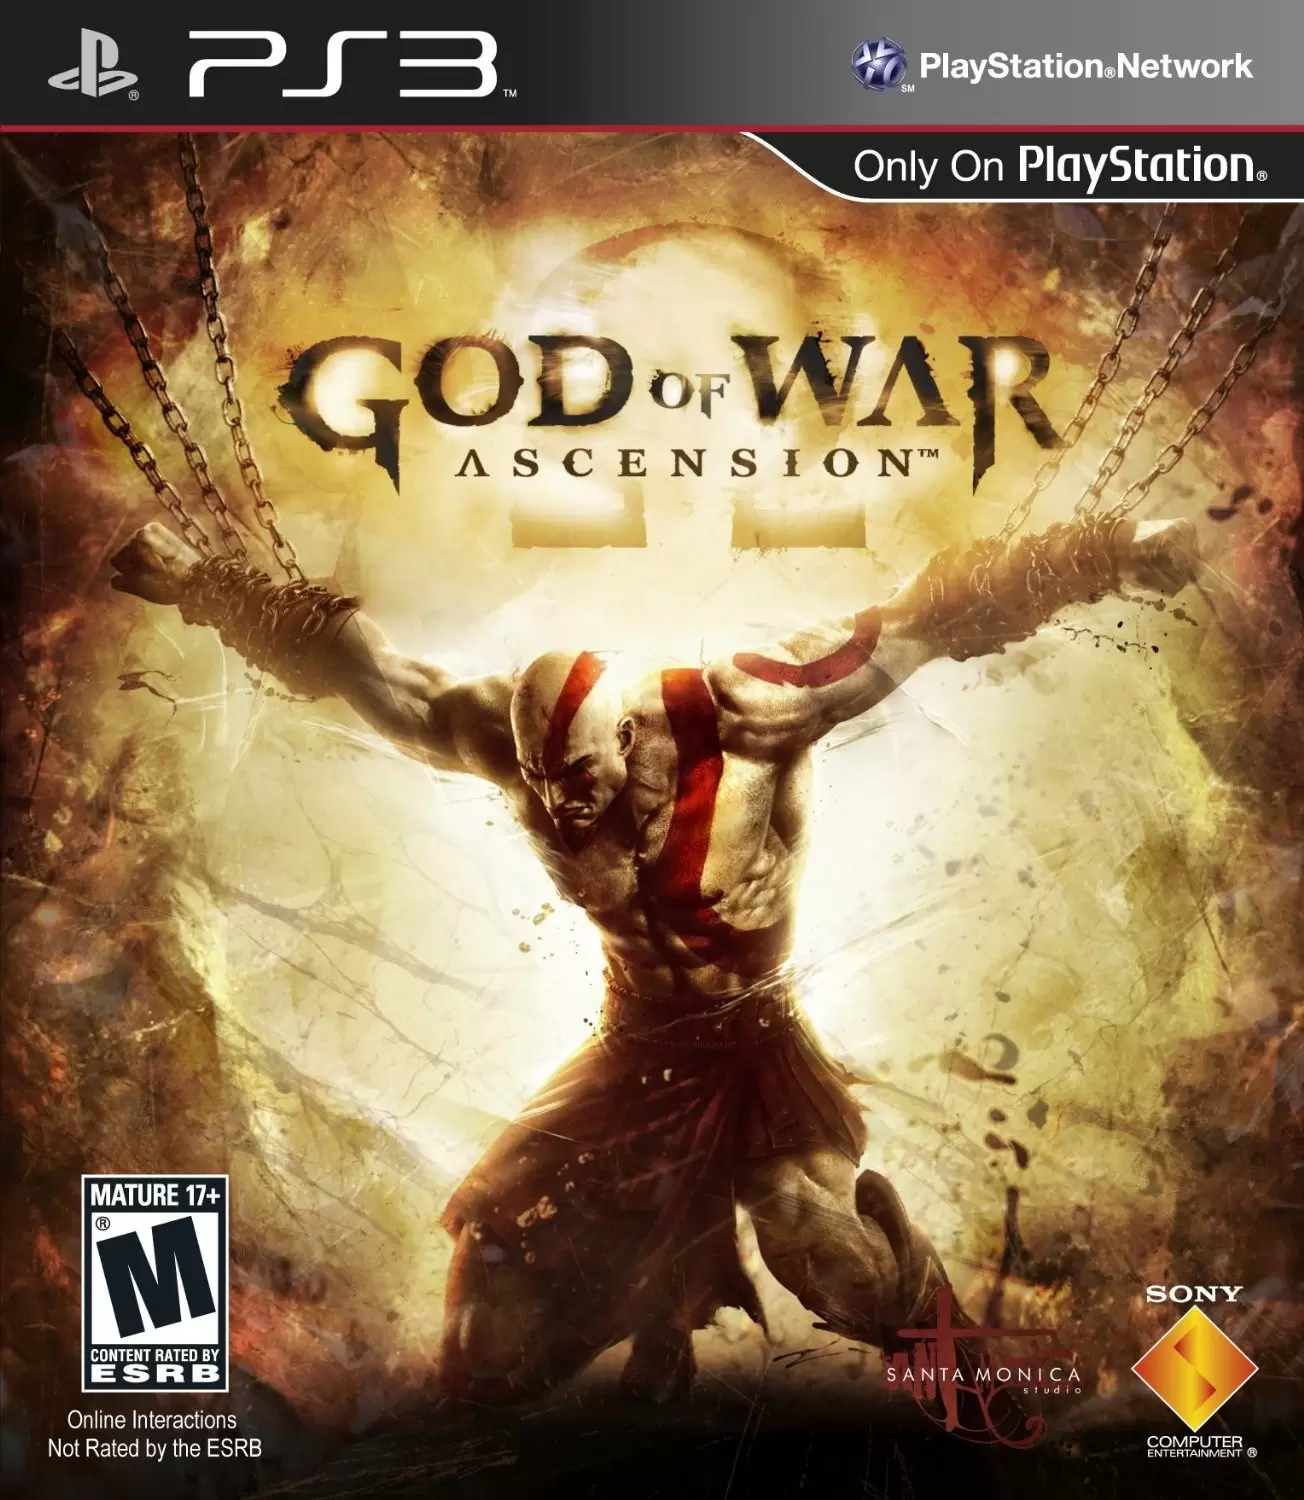 PS3 Games - God of War: Ascension